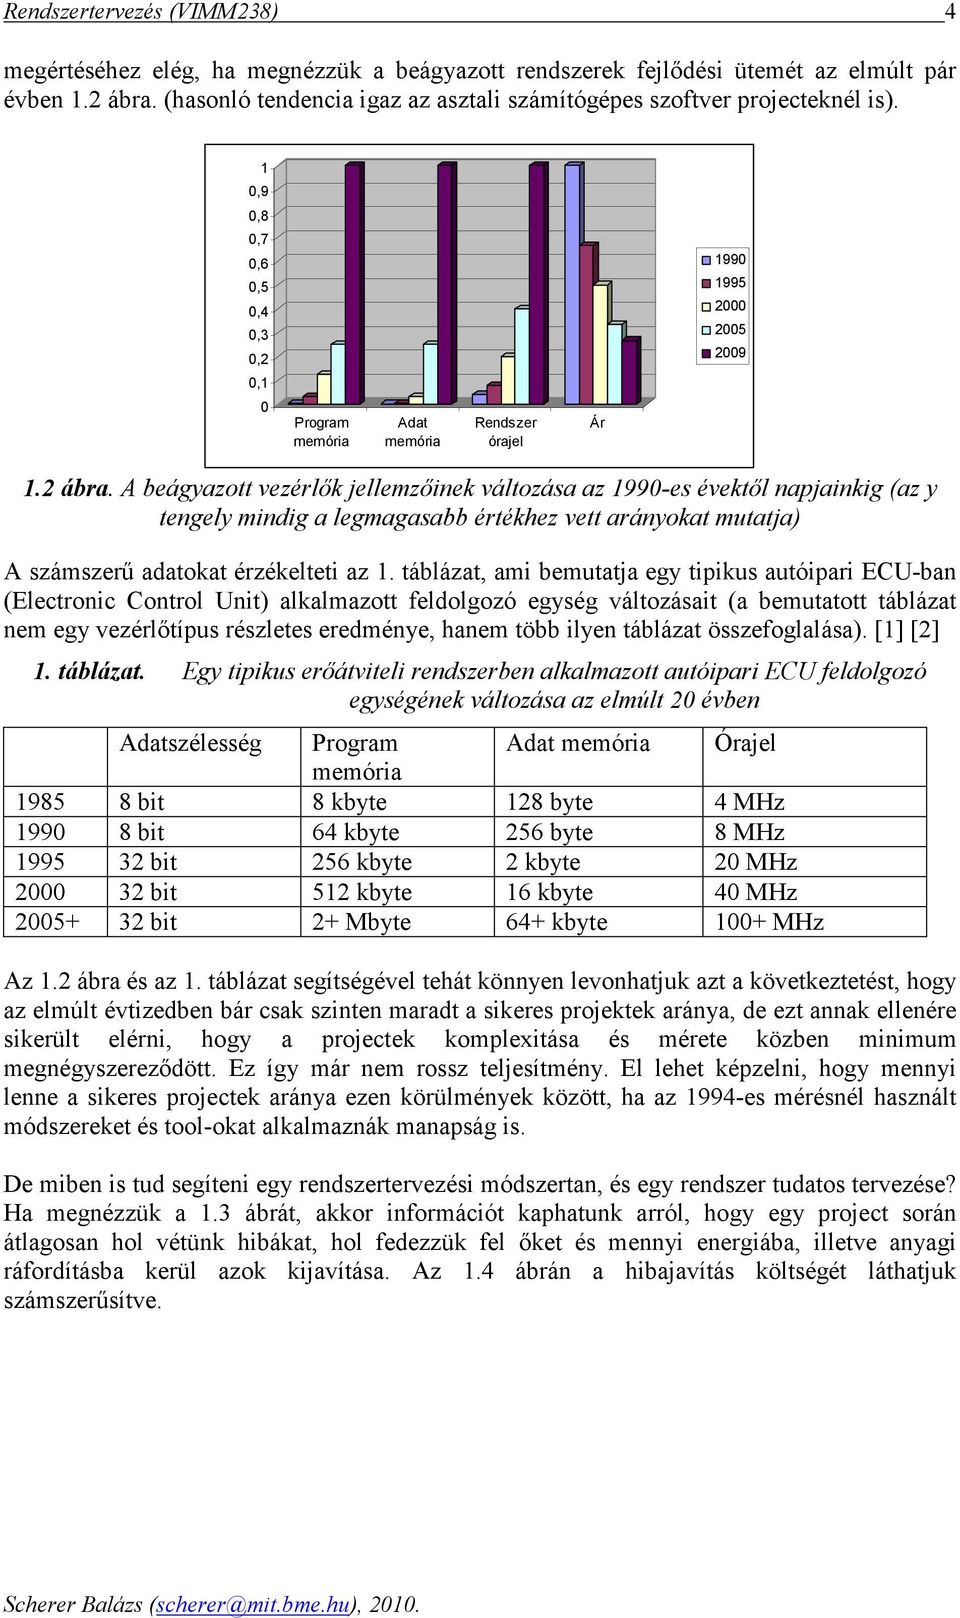 A beágyzott vezérlık jellemzıinek változás z 1990-es évektıl npjinkig (z y tengely mindig legmgsbb értékhez vett rányokt muttj) A számszerő dtokt érzékelteti z 1.